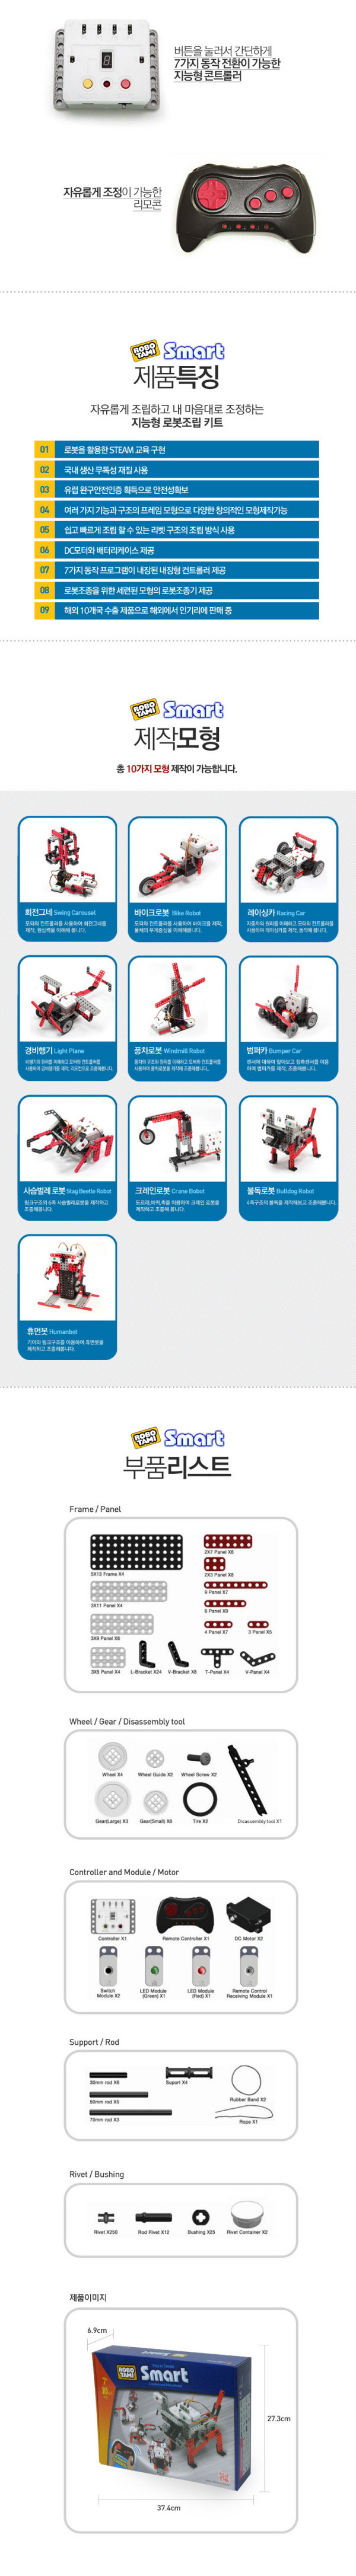 robotami-smart series-1set smart series robot robotron robotami tamiblock